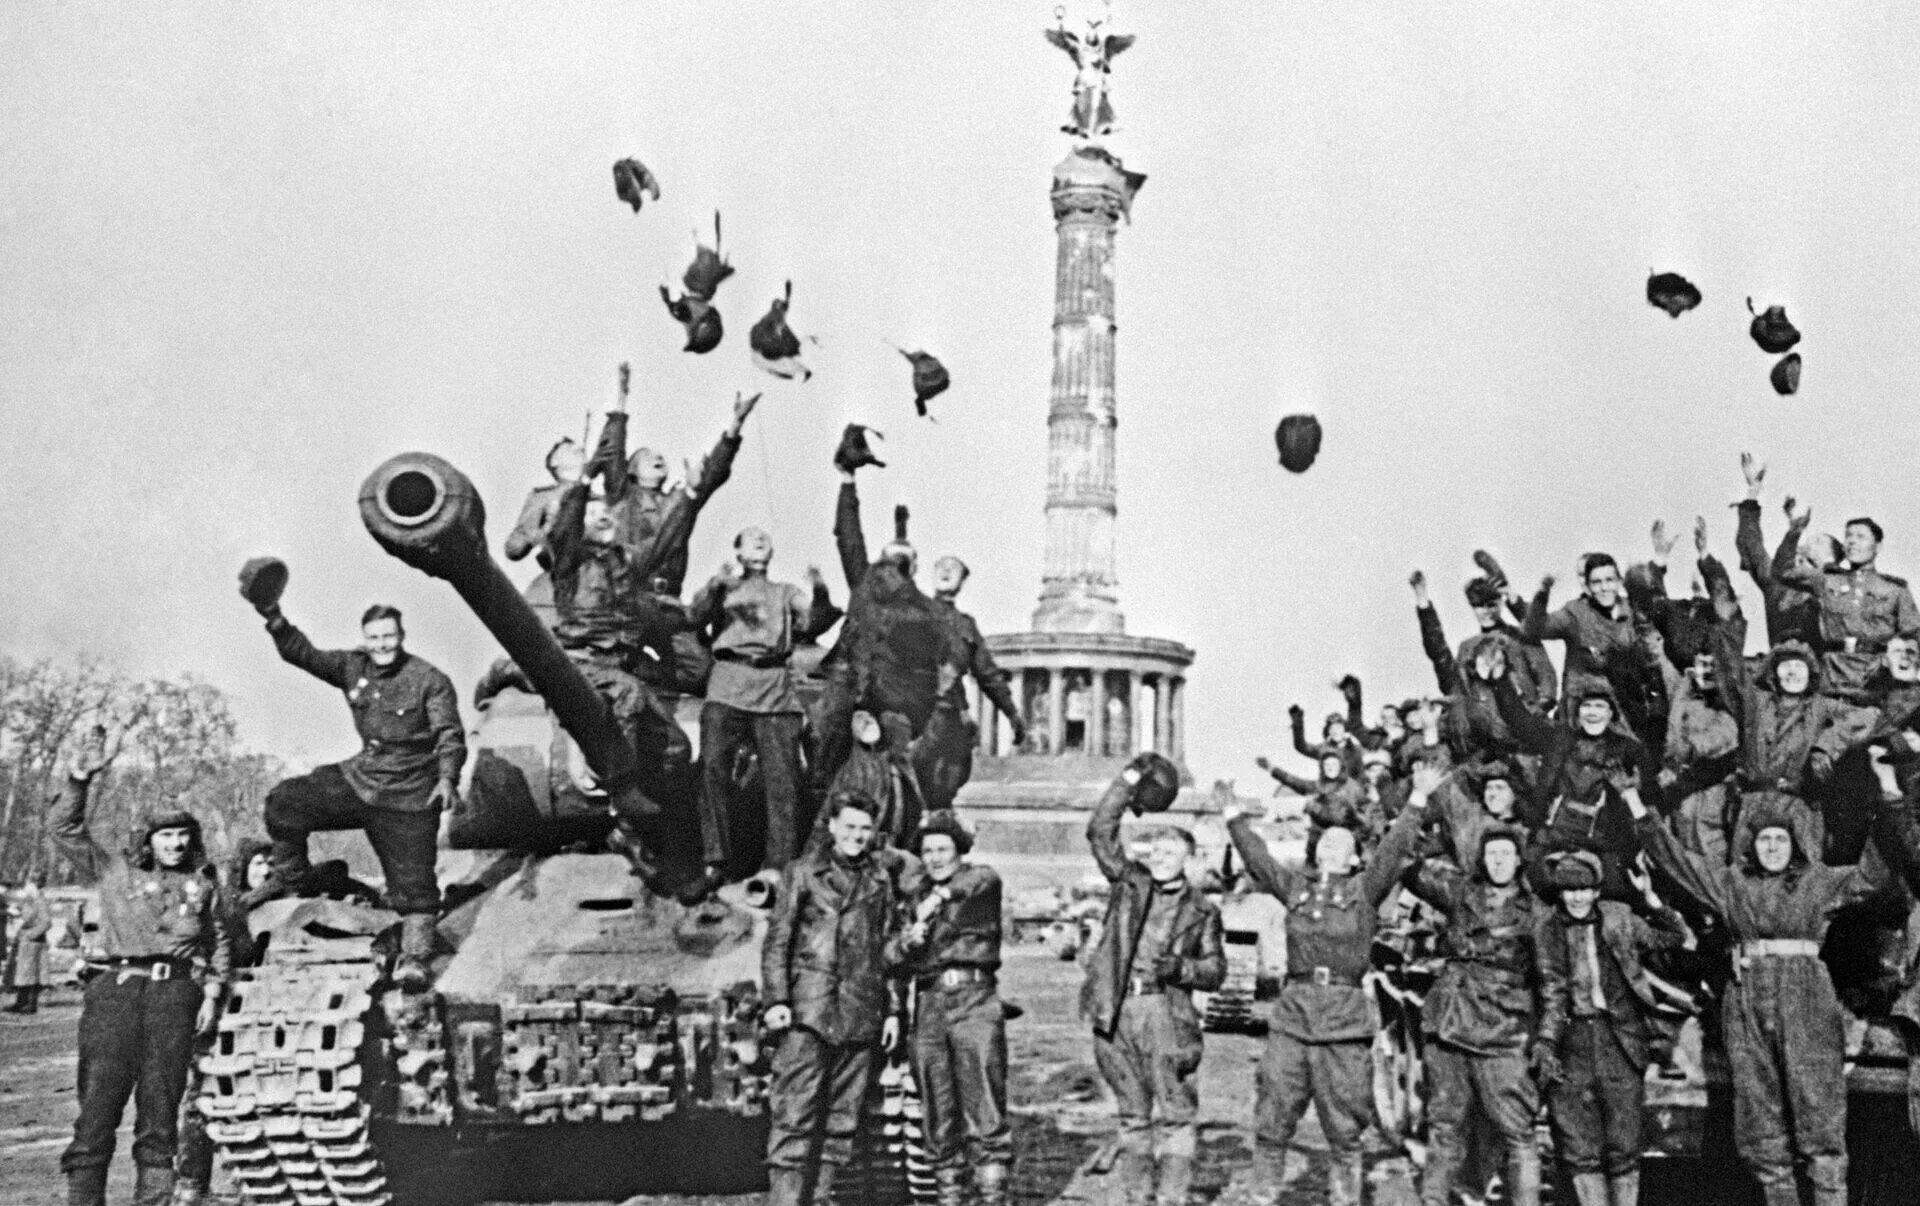 Великая победа фотографиями. Берлин лето 1945. 9 Мая 1945 Берлин. Победа в Великой Отечественной войне. 4 Мая 1945 в Берлине.